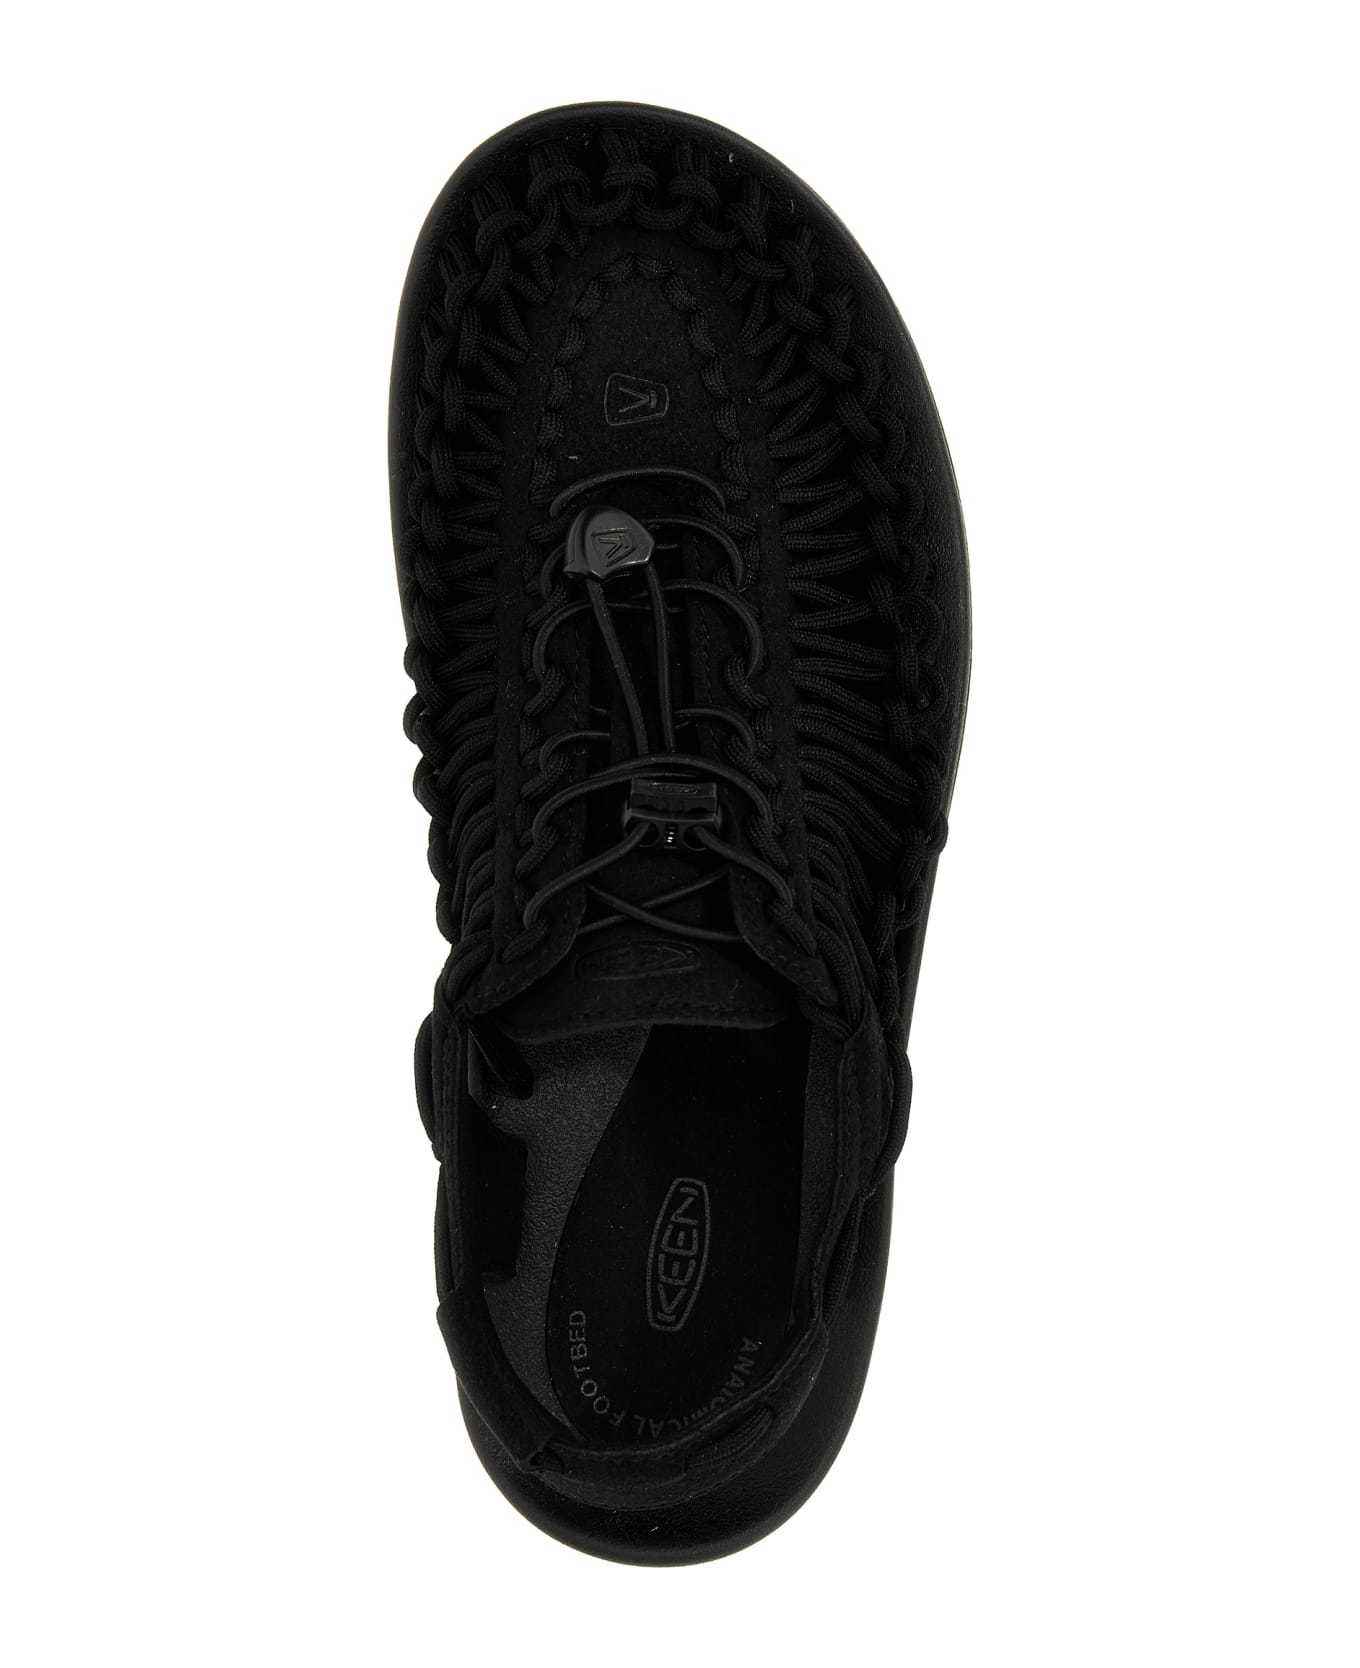 Keen 'uneek' Sneakers - Black/black